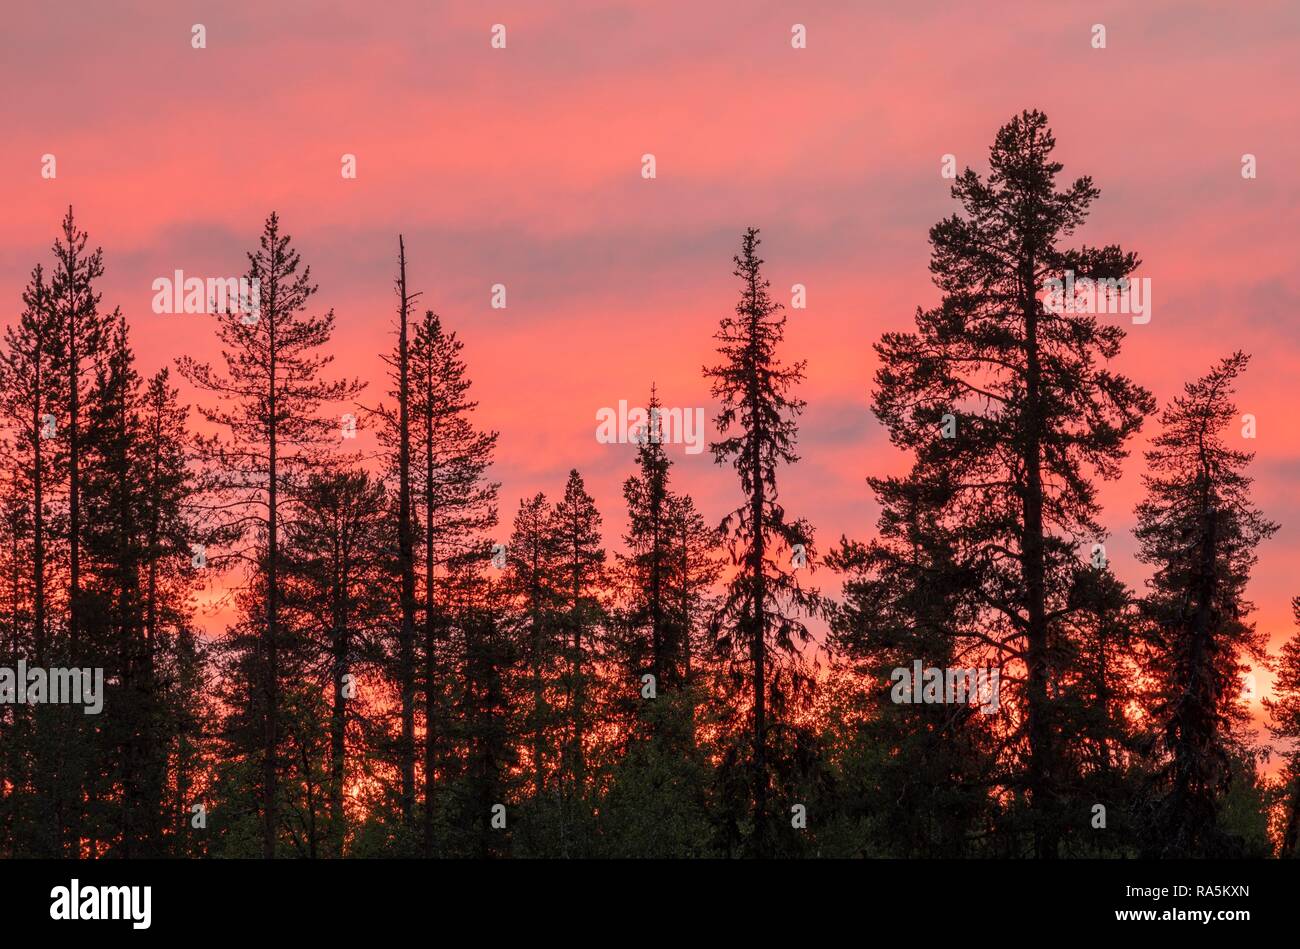 Coucher du soleil, des silhouettes d'arbres, rose ciel derrière, Kittilä, Lappi, Finlande Banque D'Images